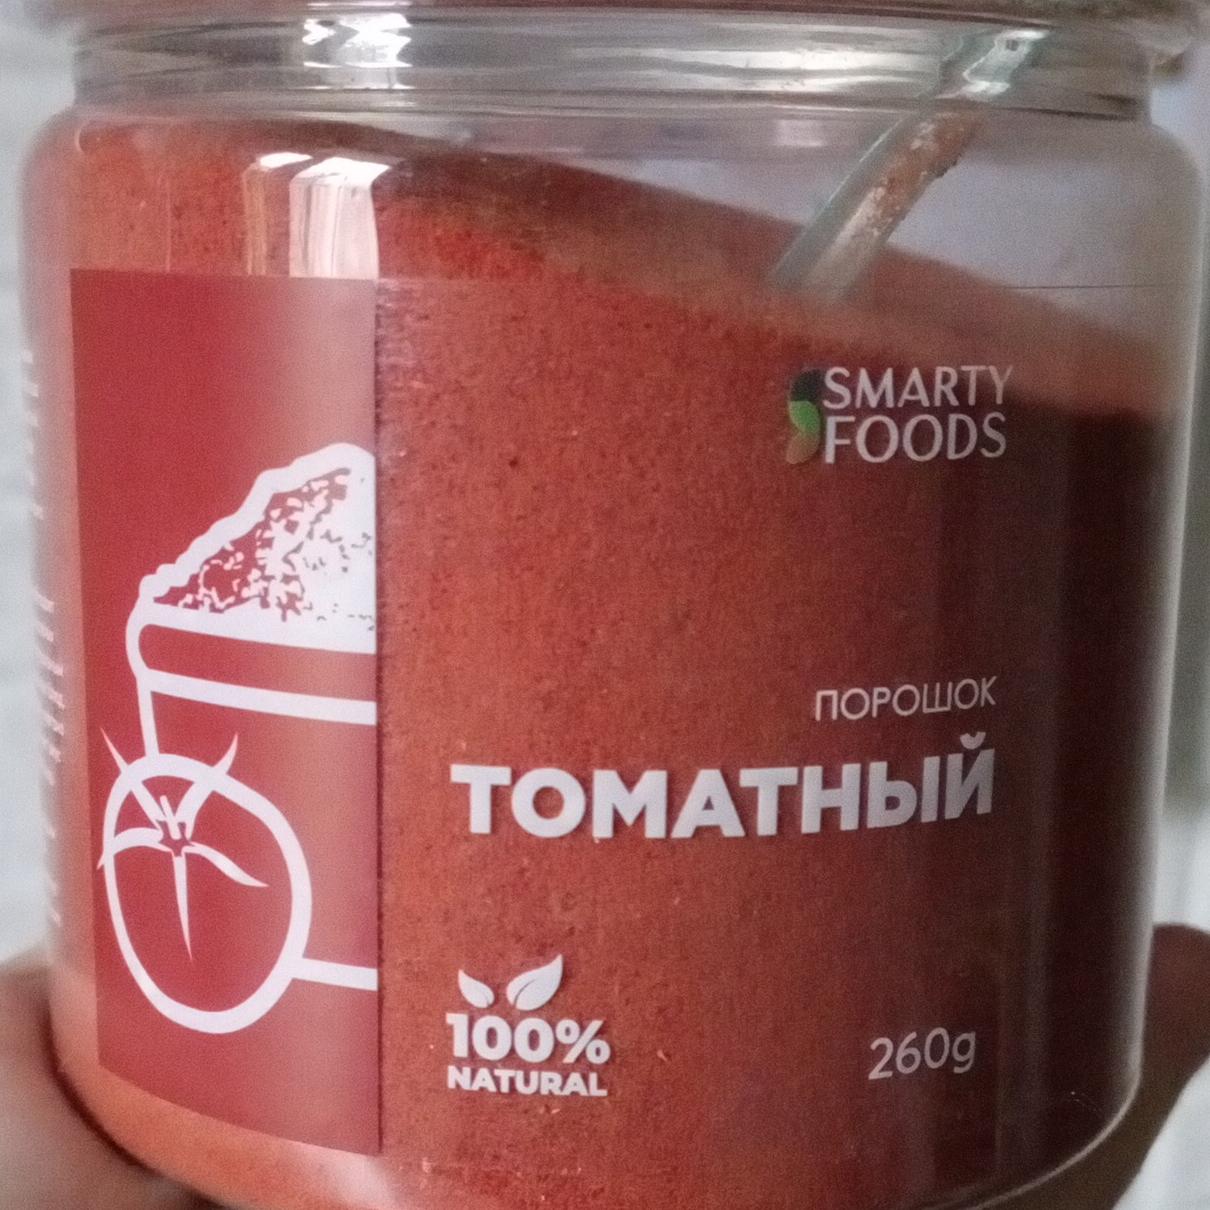 Фото - Порошок томатный Smarty foods